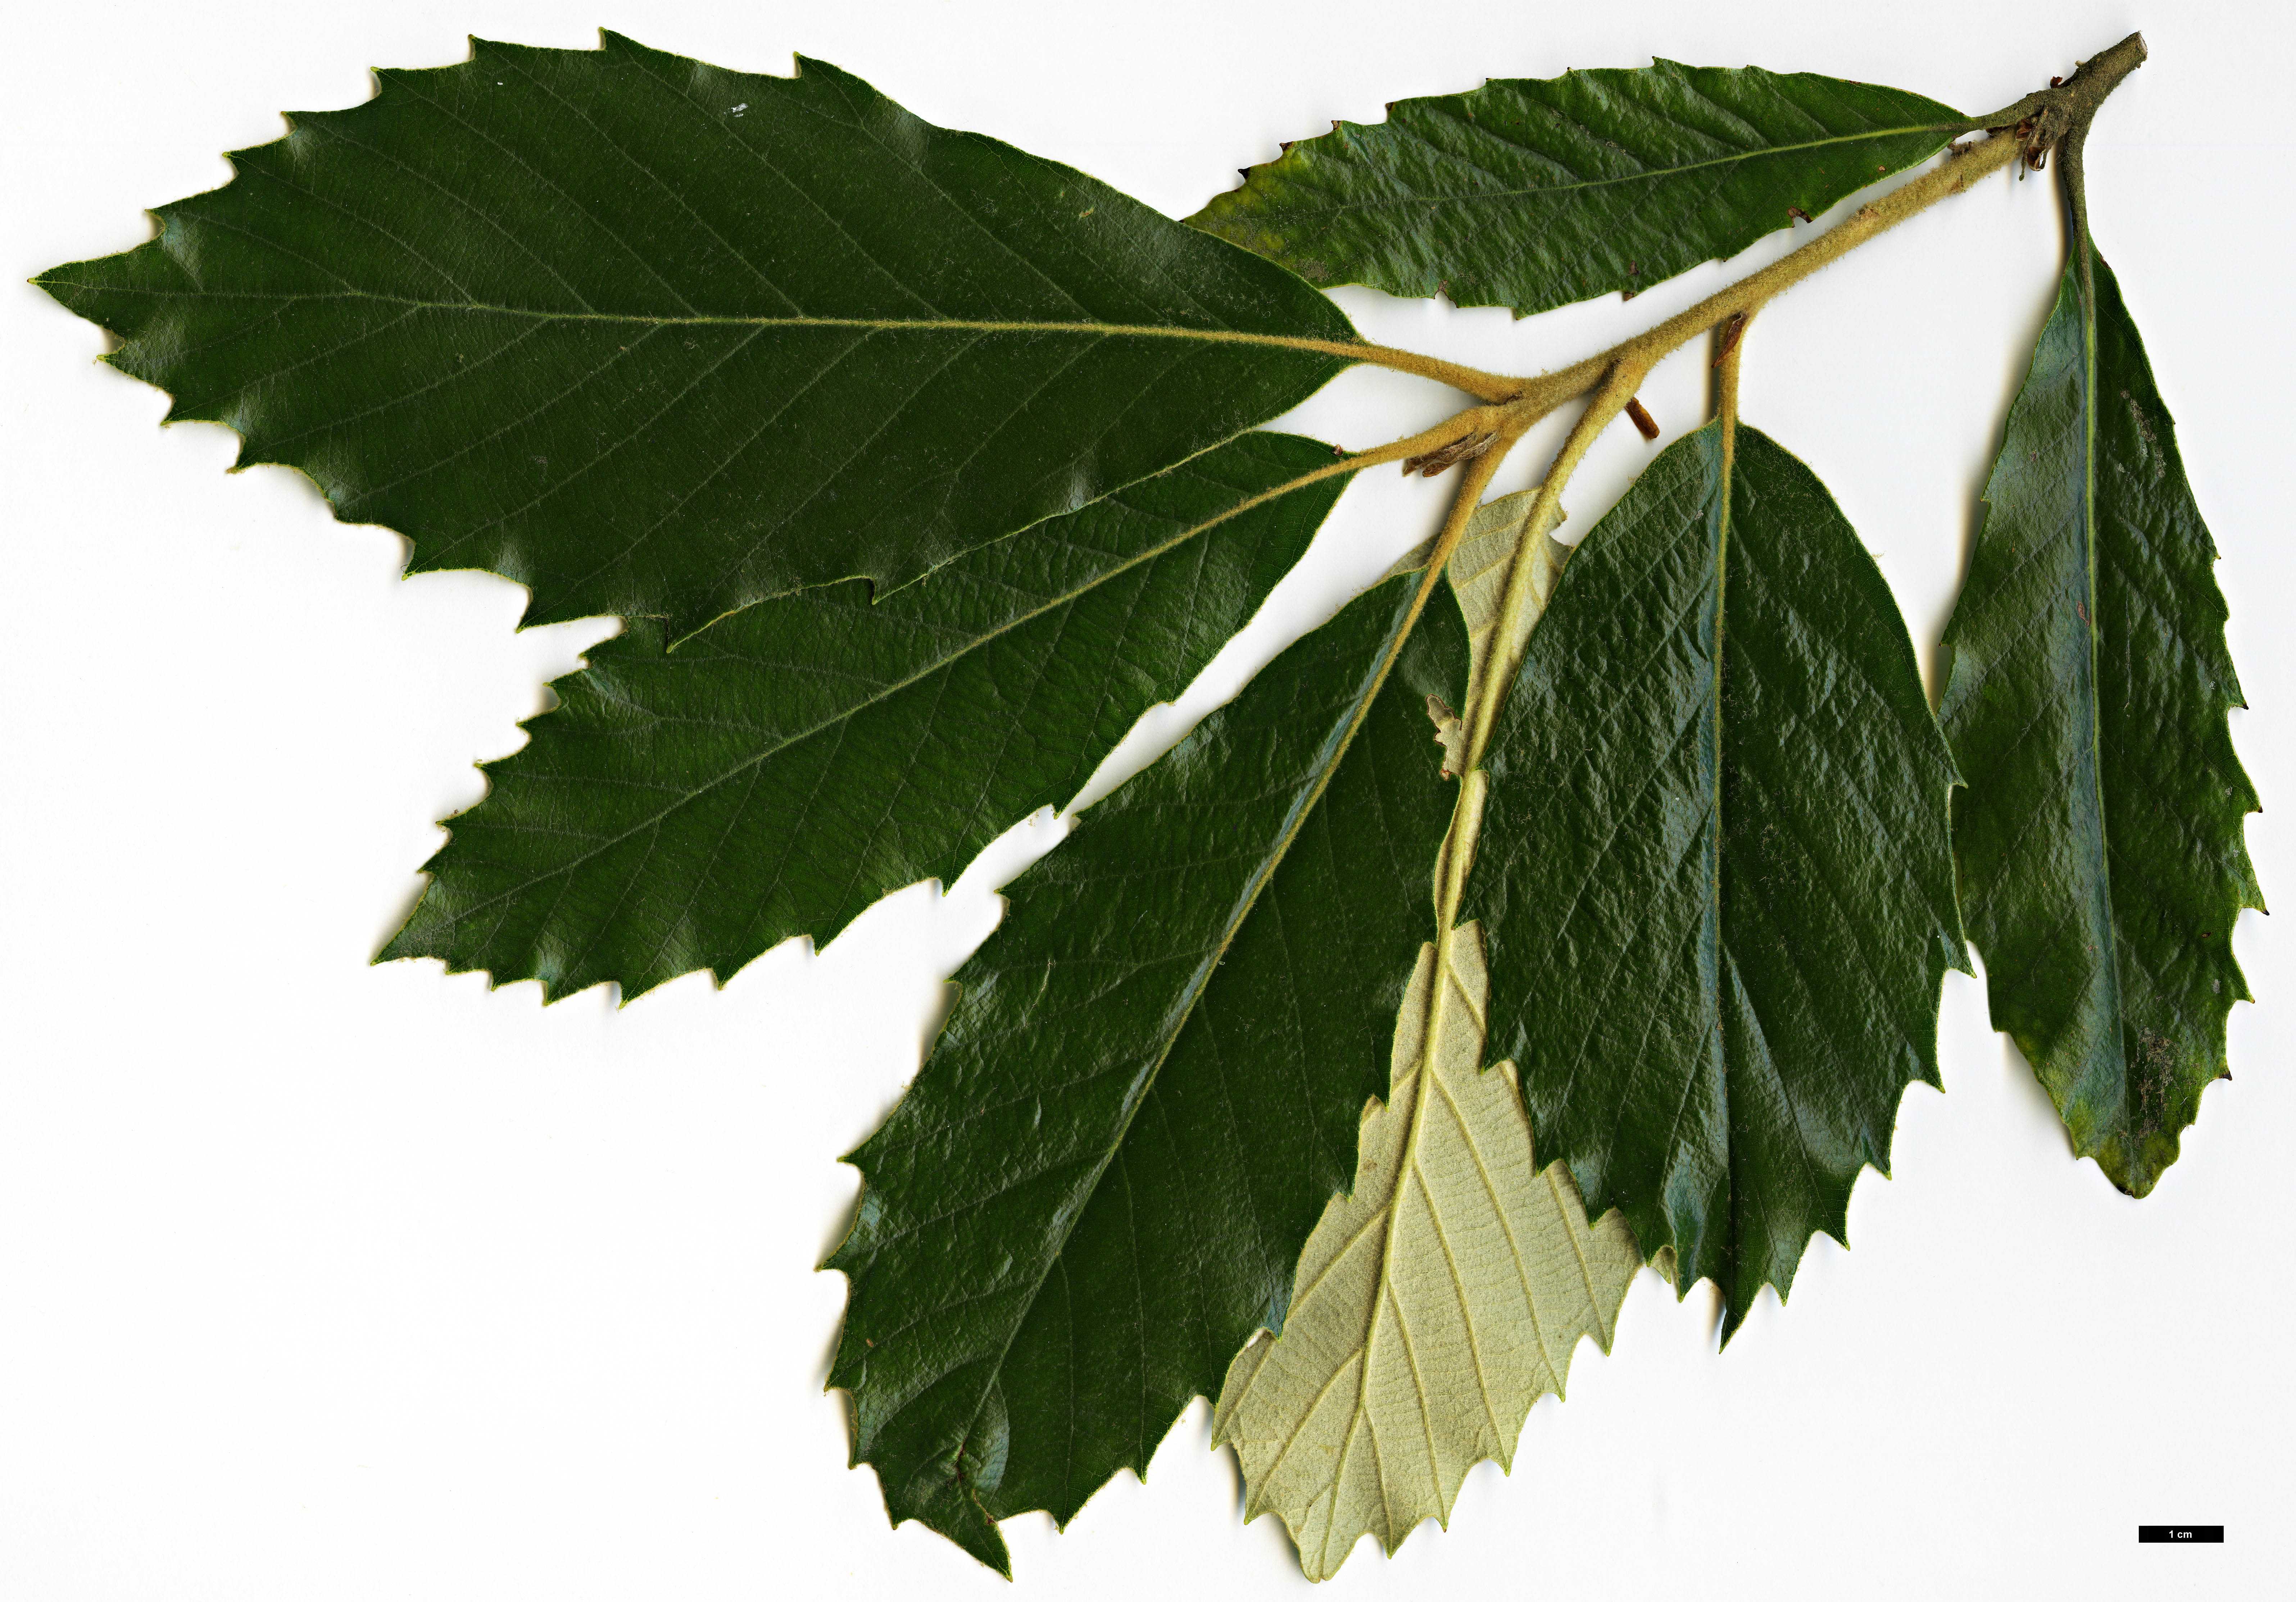 High resolution image: Family: Fagaceae - Genus: Quercus - Taxon: lanata